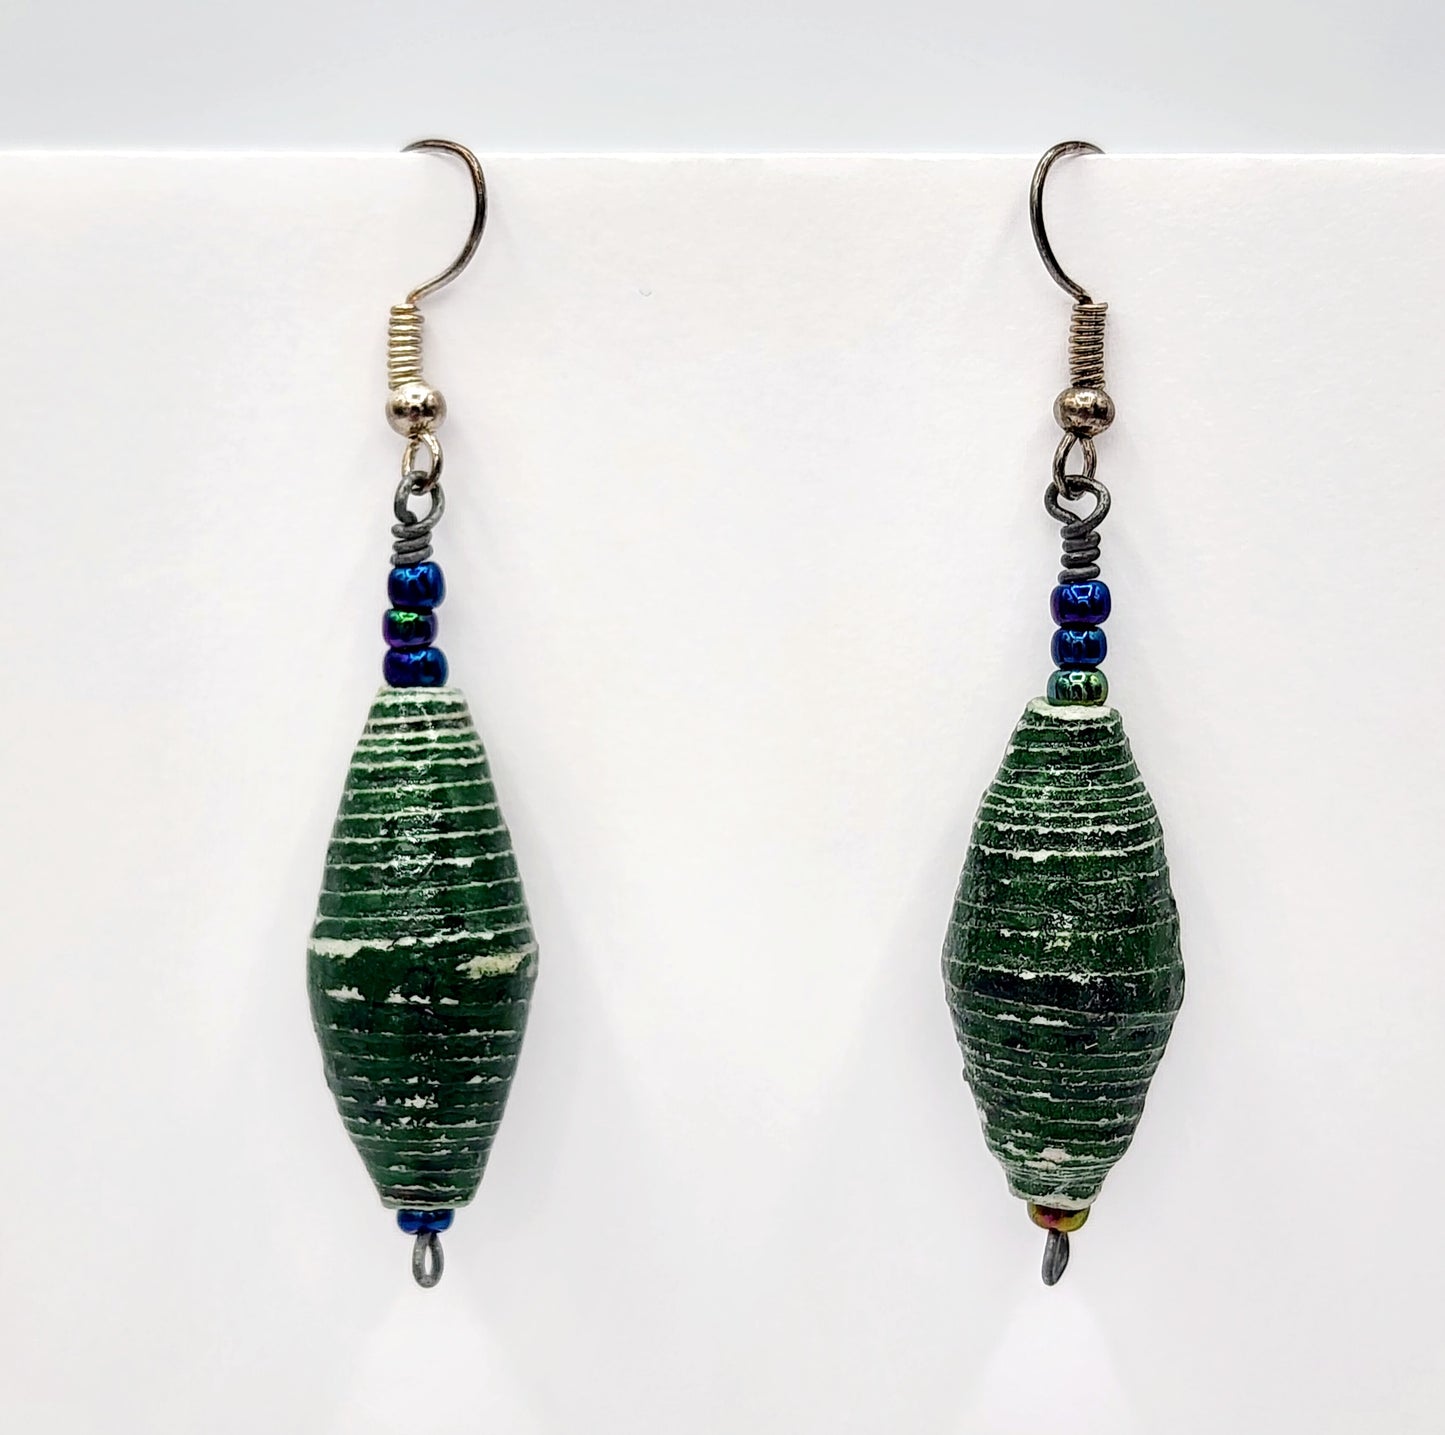 Handmade Recycled Paper Bead Earrings